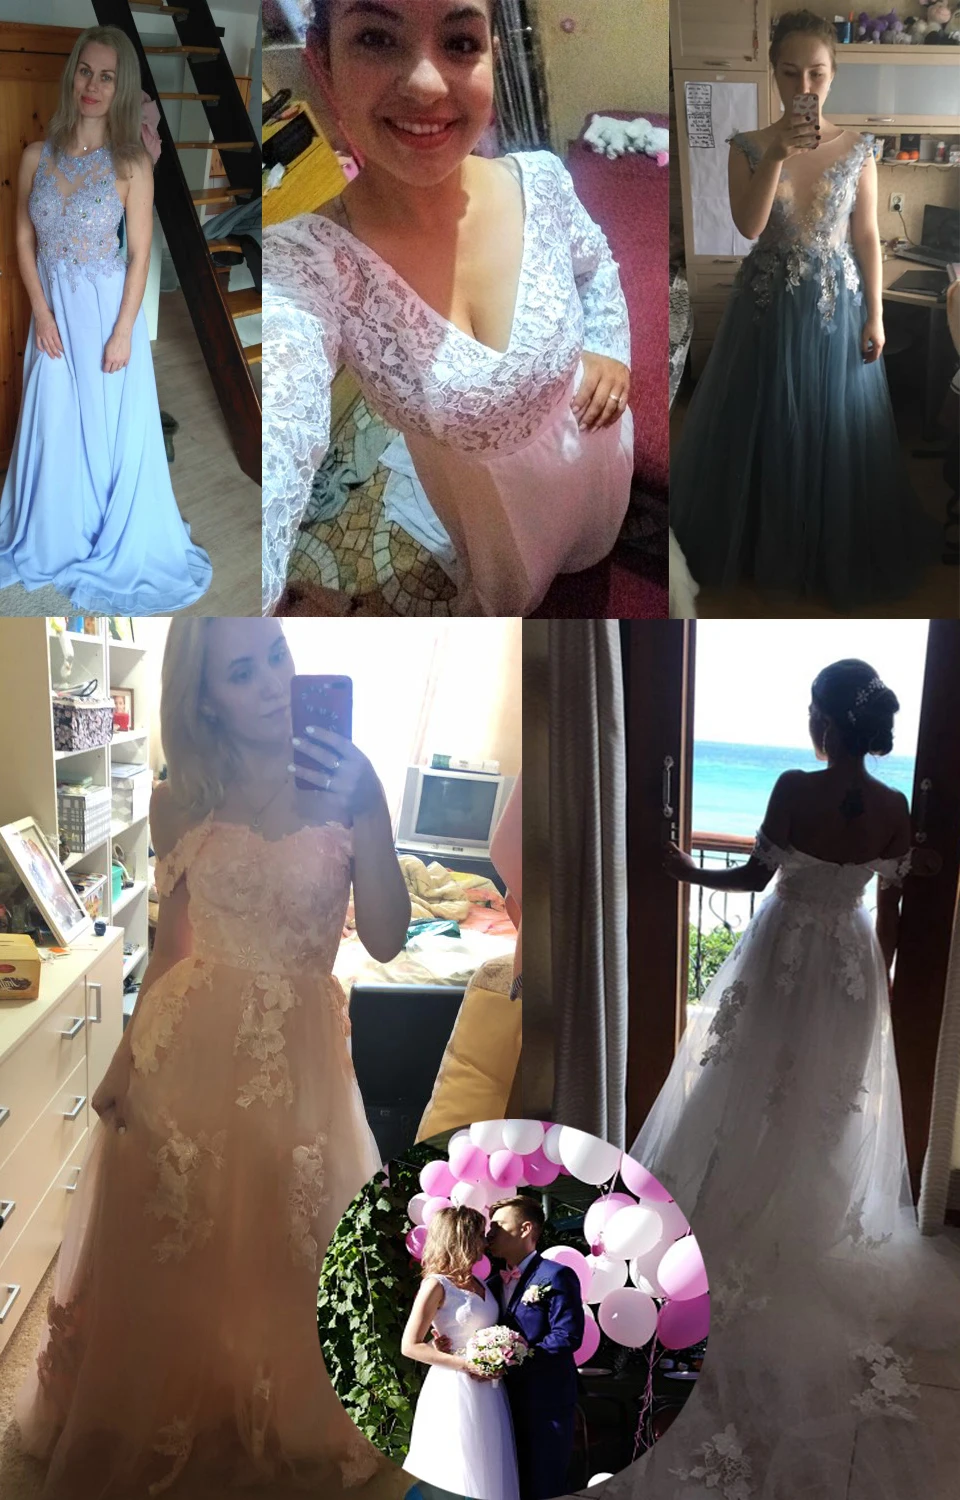 LORIE/свадебное платье, кружевной топ, длинная юбка с шлейфом, платье для невесты, а-силуэт, летнее пляжное свадебное платье, vestido de casamento